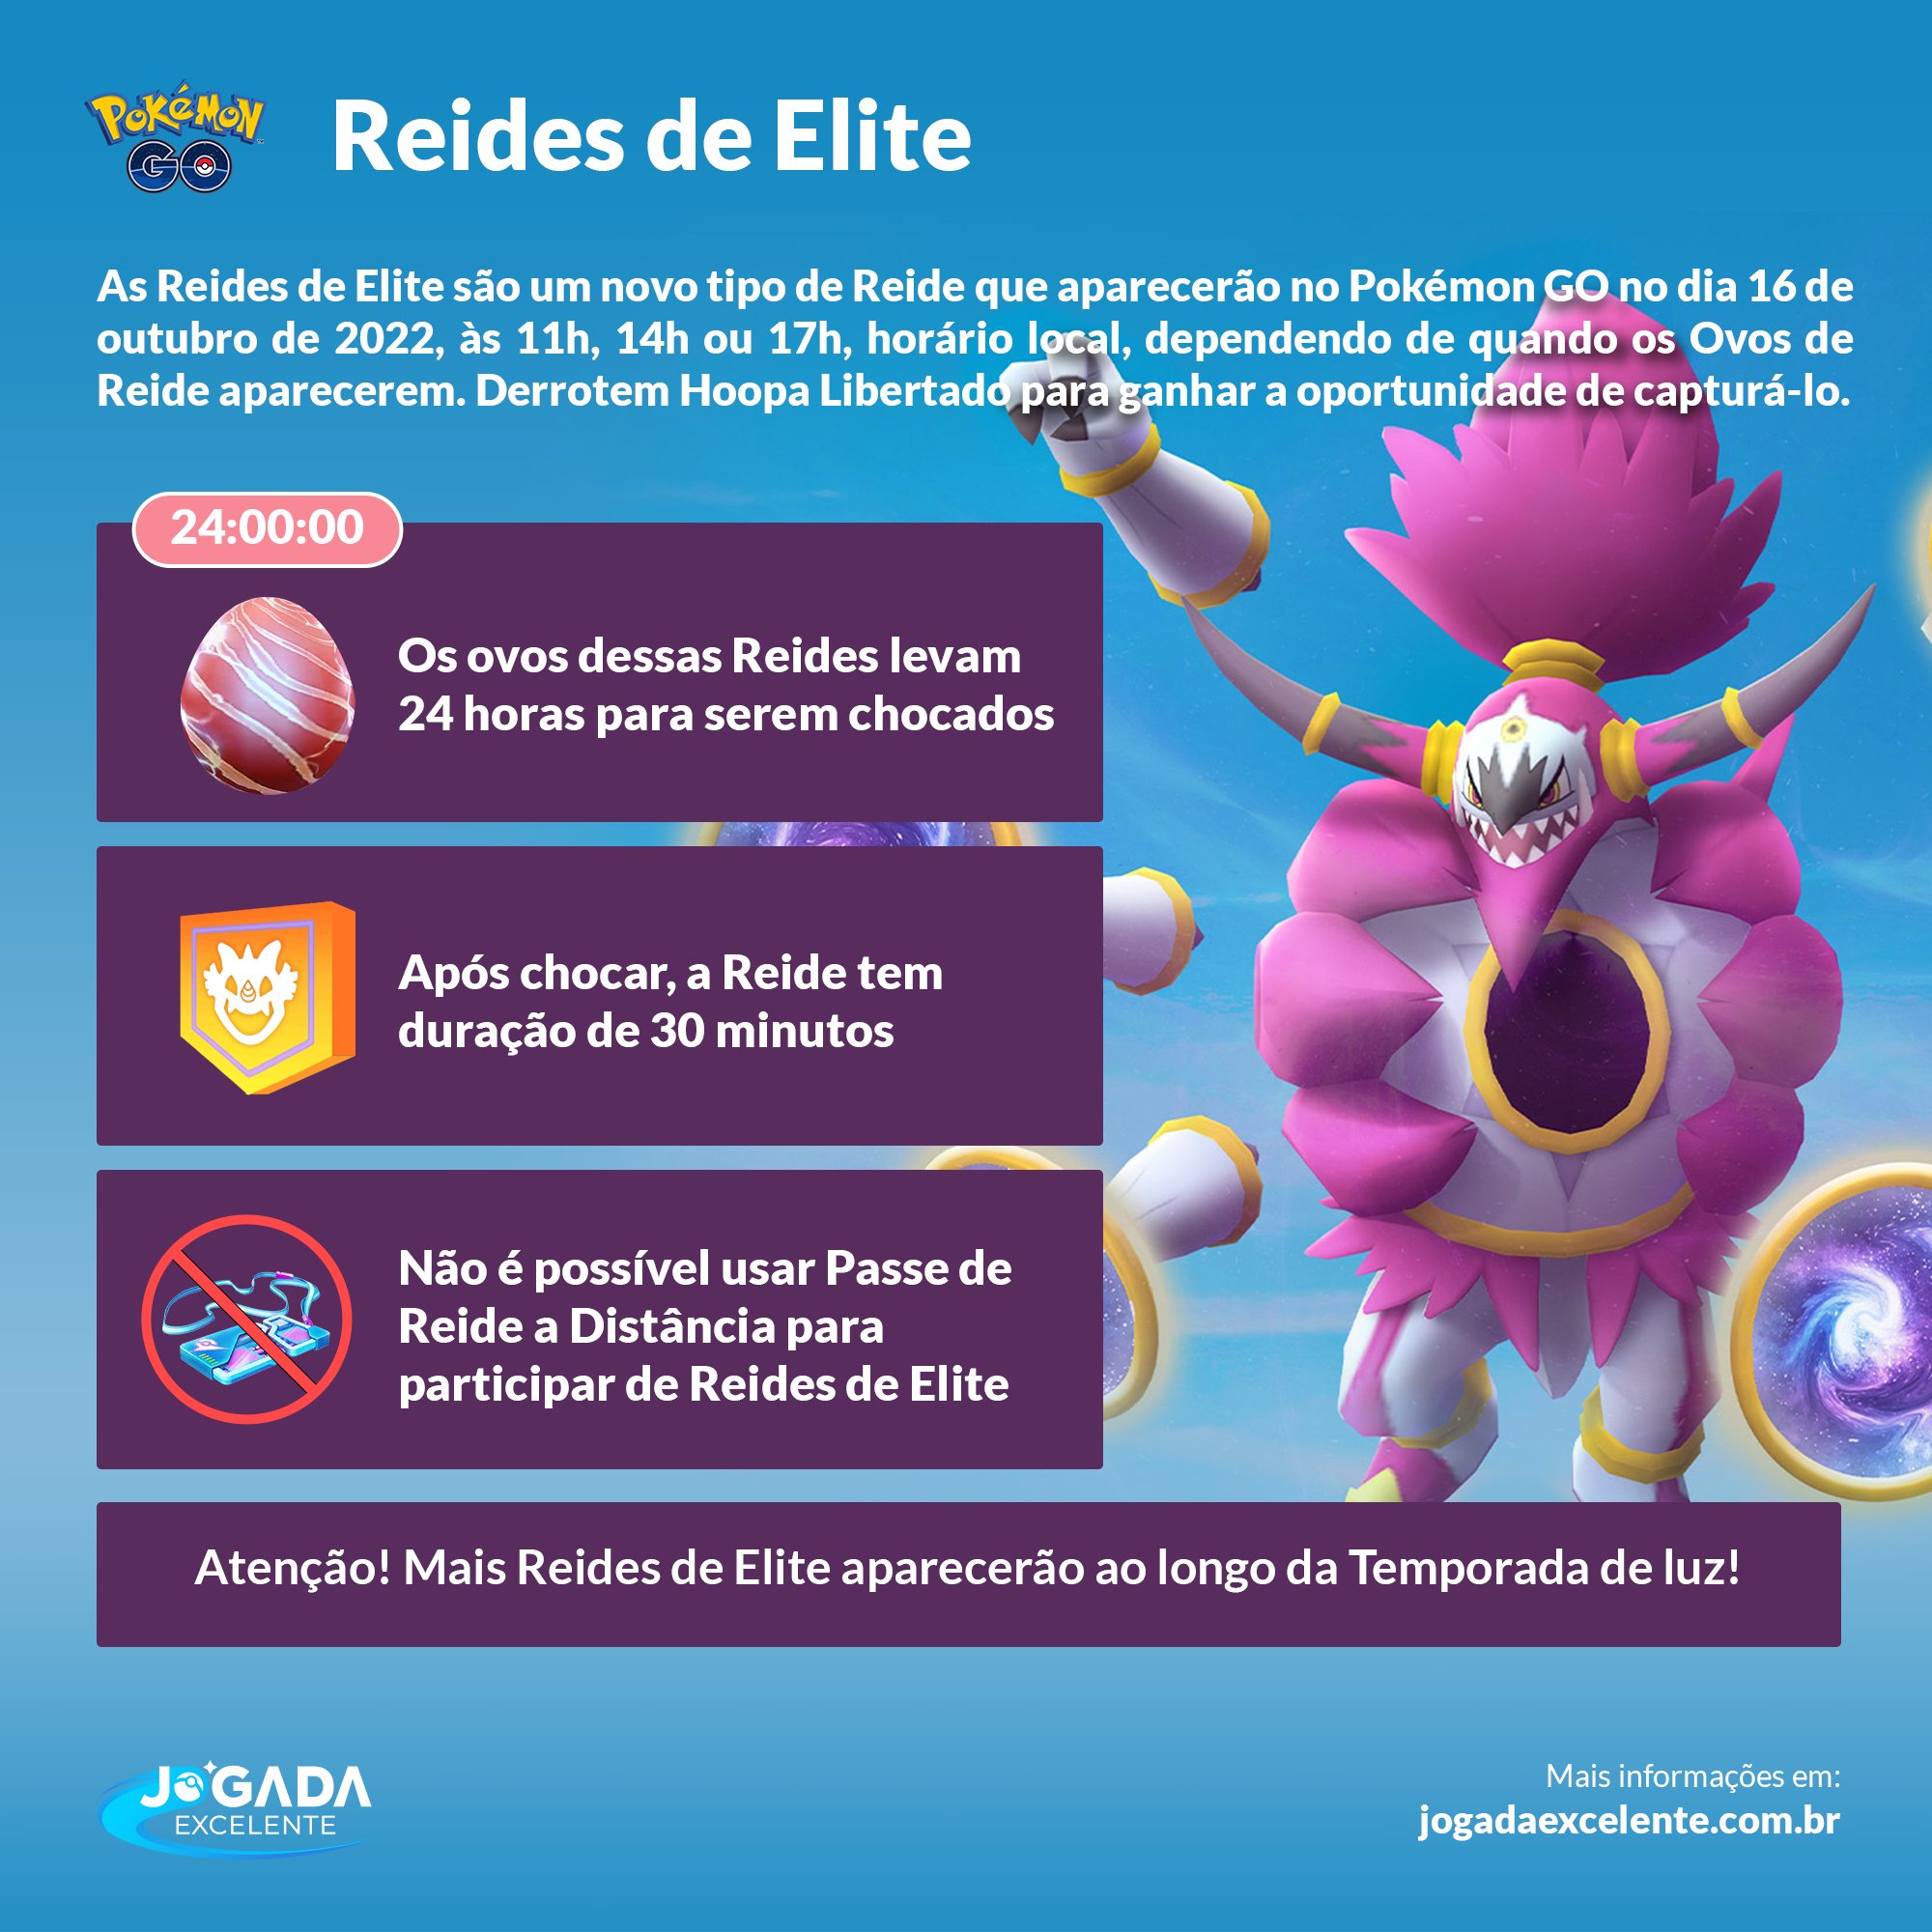 Jogada Excelente on X: Pokémon GO: As Reides de Elite são um novo tipo de  Reide que levam 24 horas para chocar e duram 30 minutos. No dia 16/10 você  poderá enfrentar